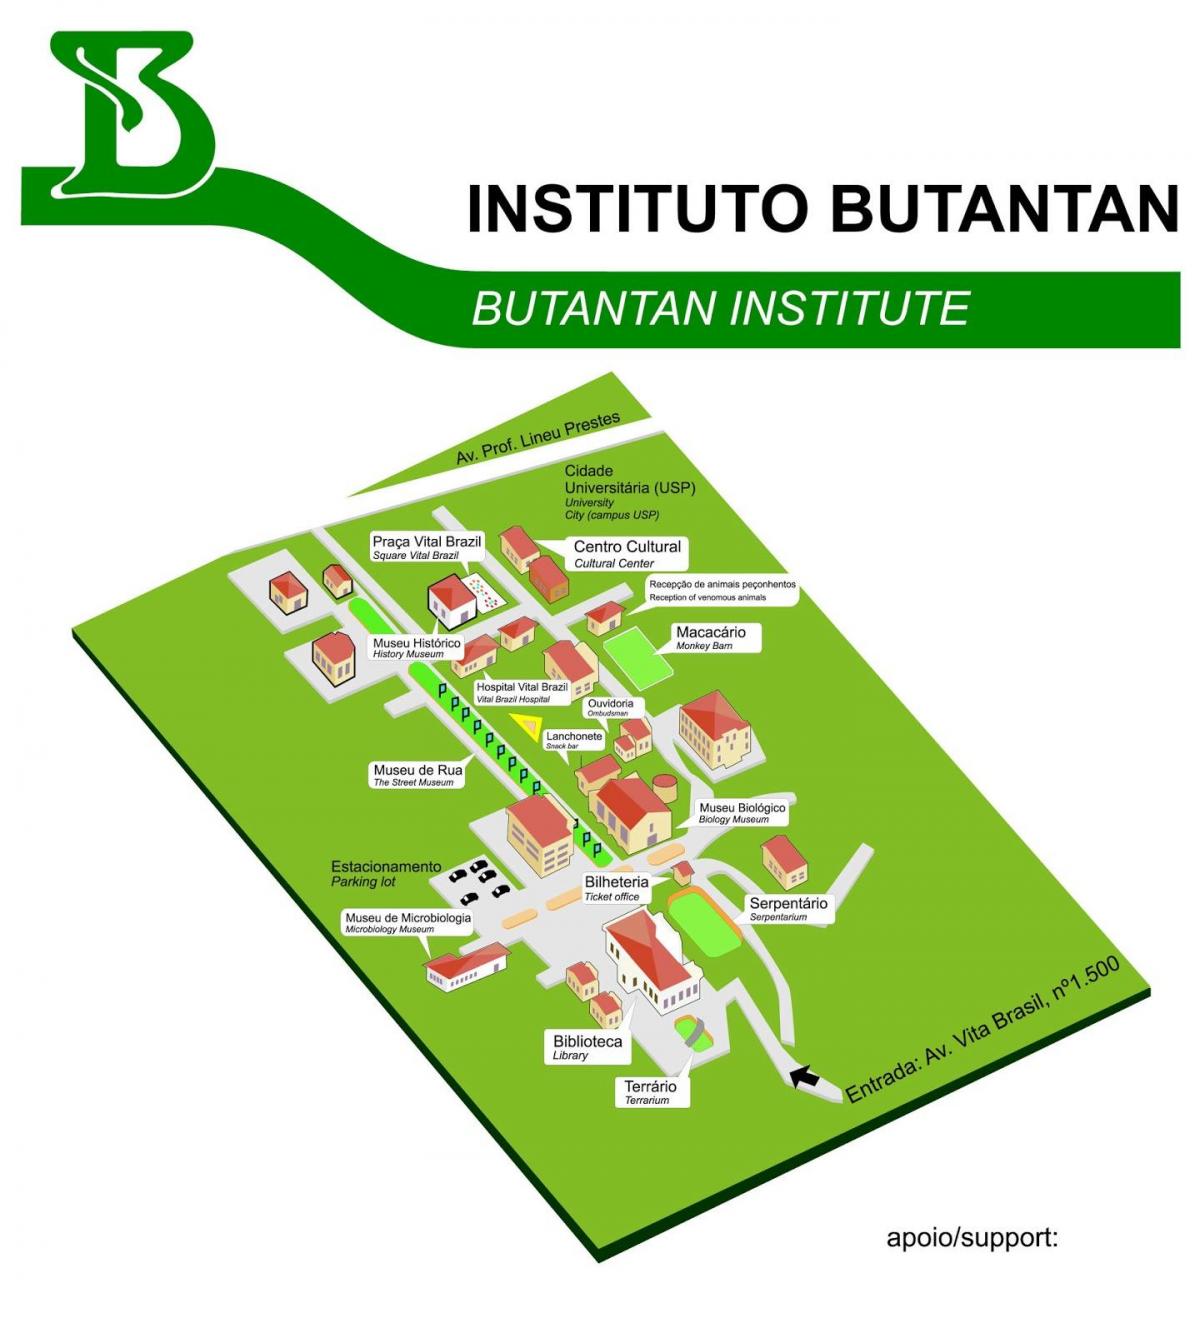 Kort over institute Butantan